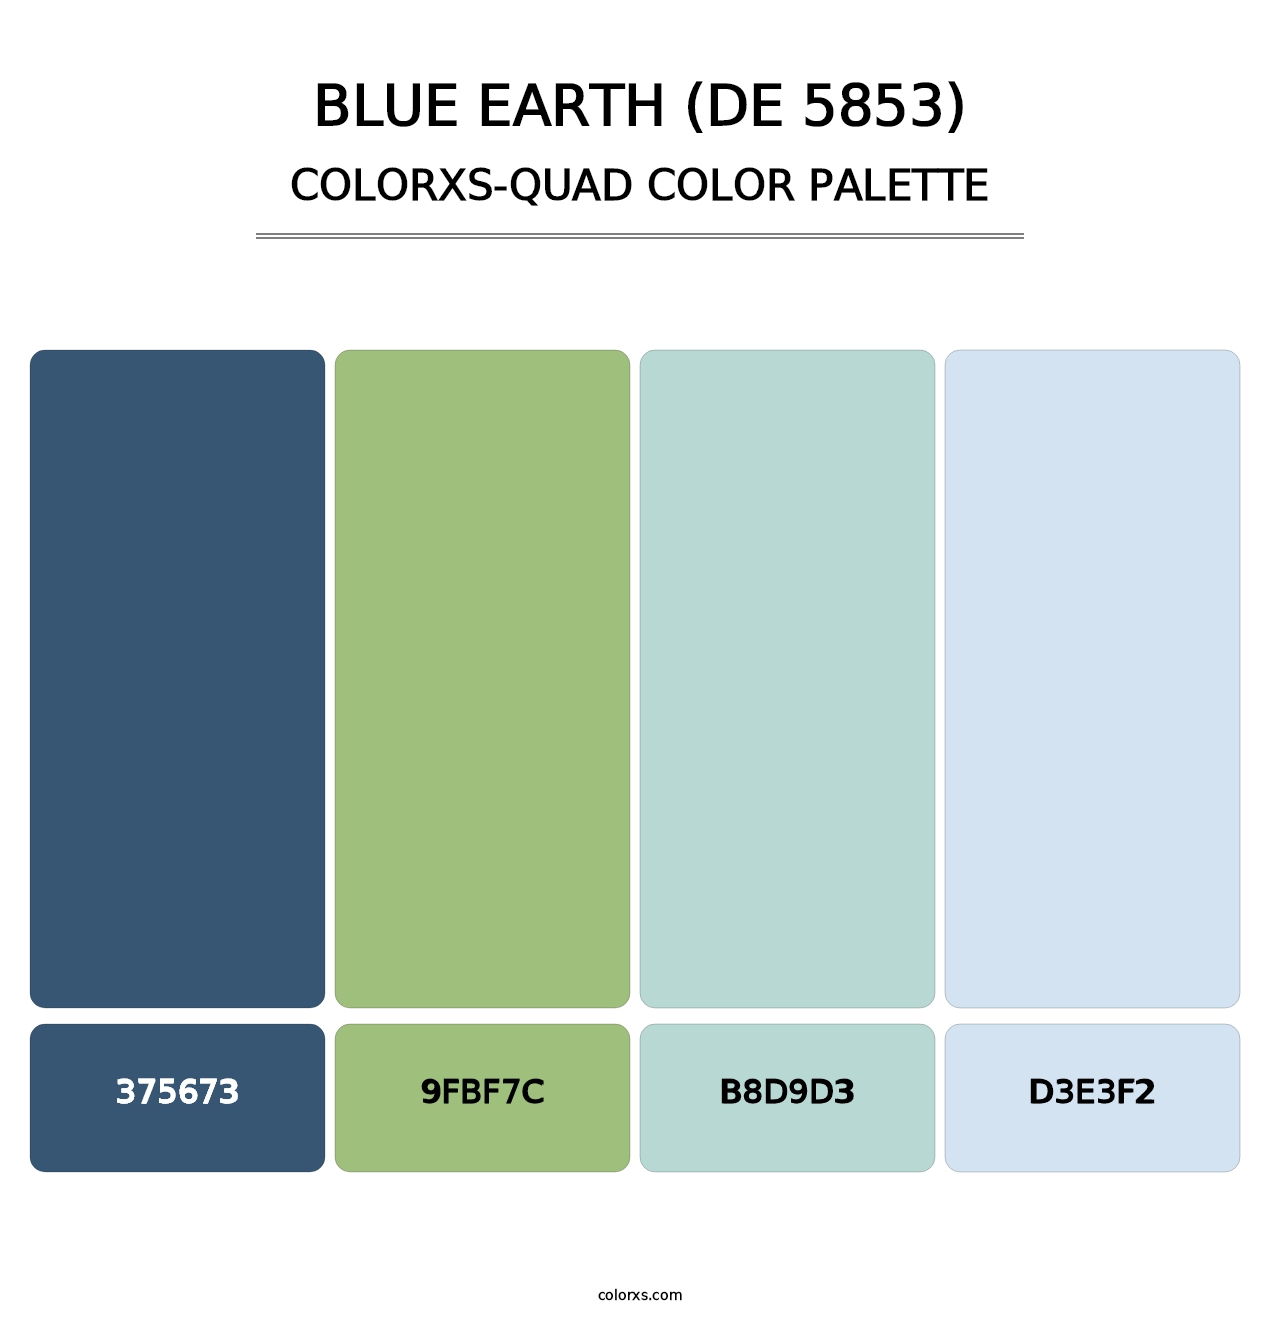 Blue Earth (DE 5853) - Colorxs Quad Palette